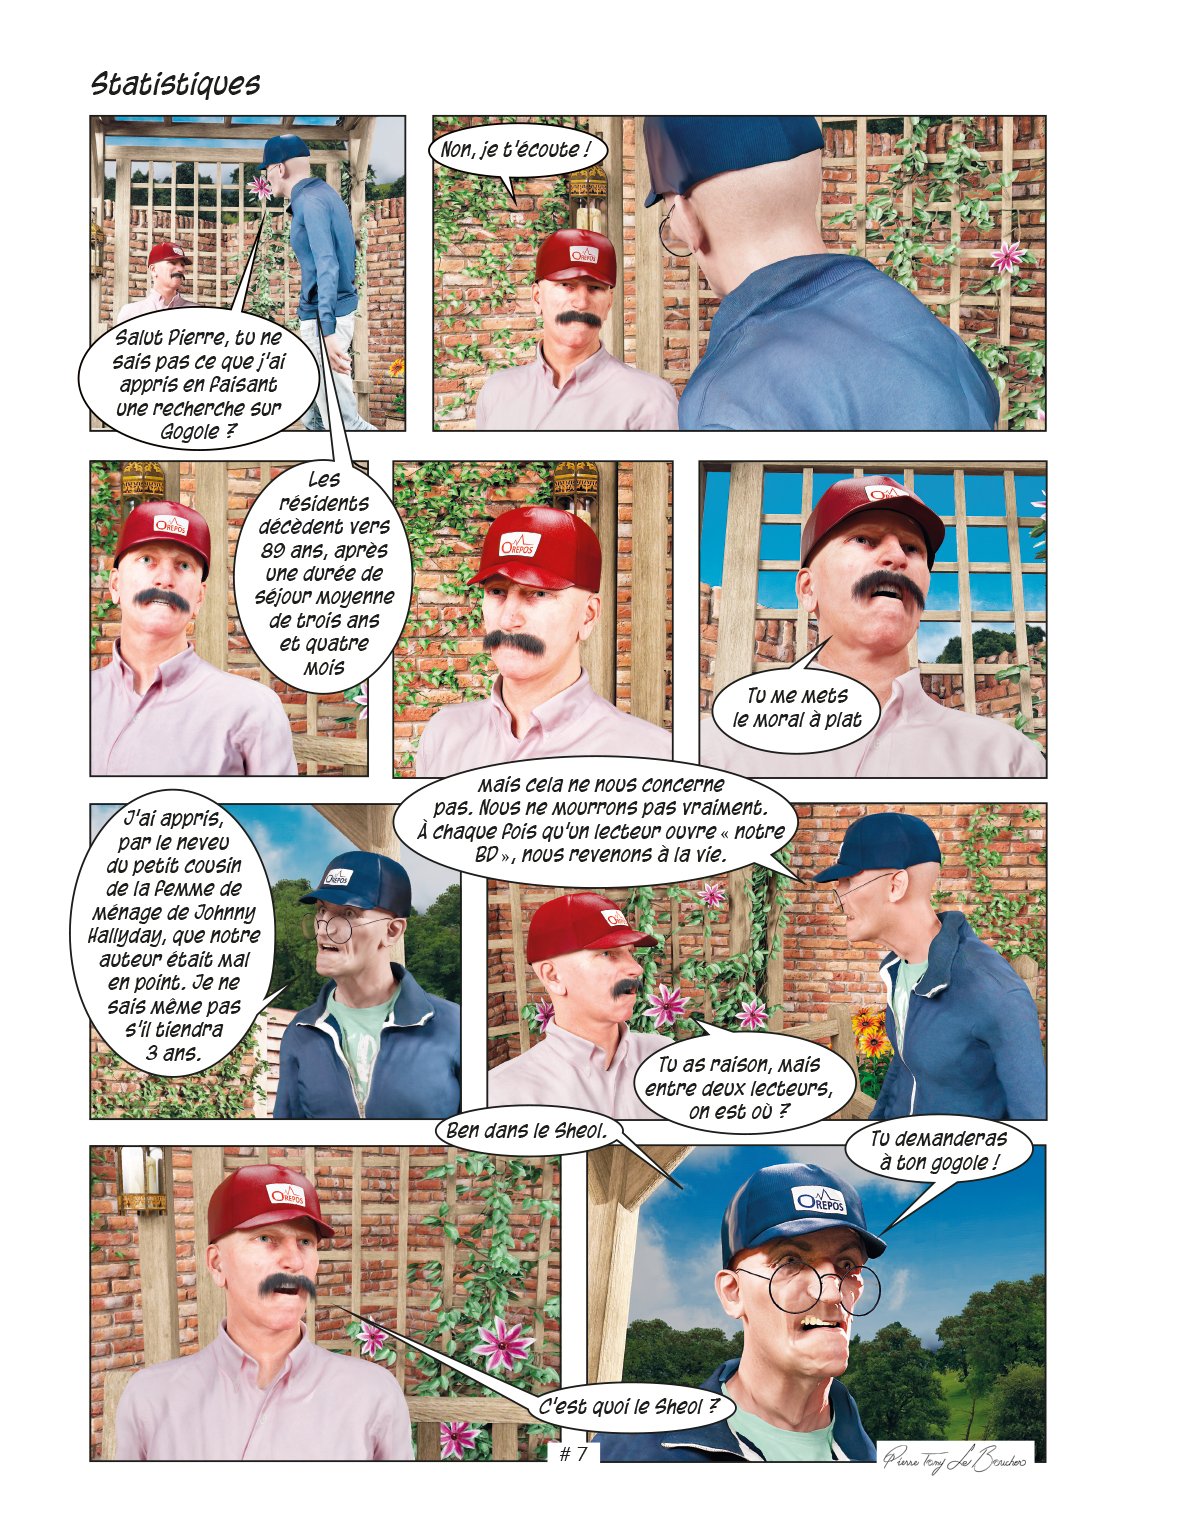 Pierre et Tom, extrait 02 d'une bande dessinée de Pierre Tomy Le Boucher qui se passe dans une maison de retraite.